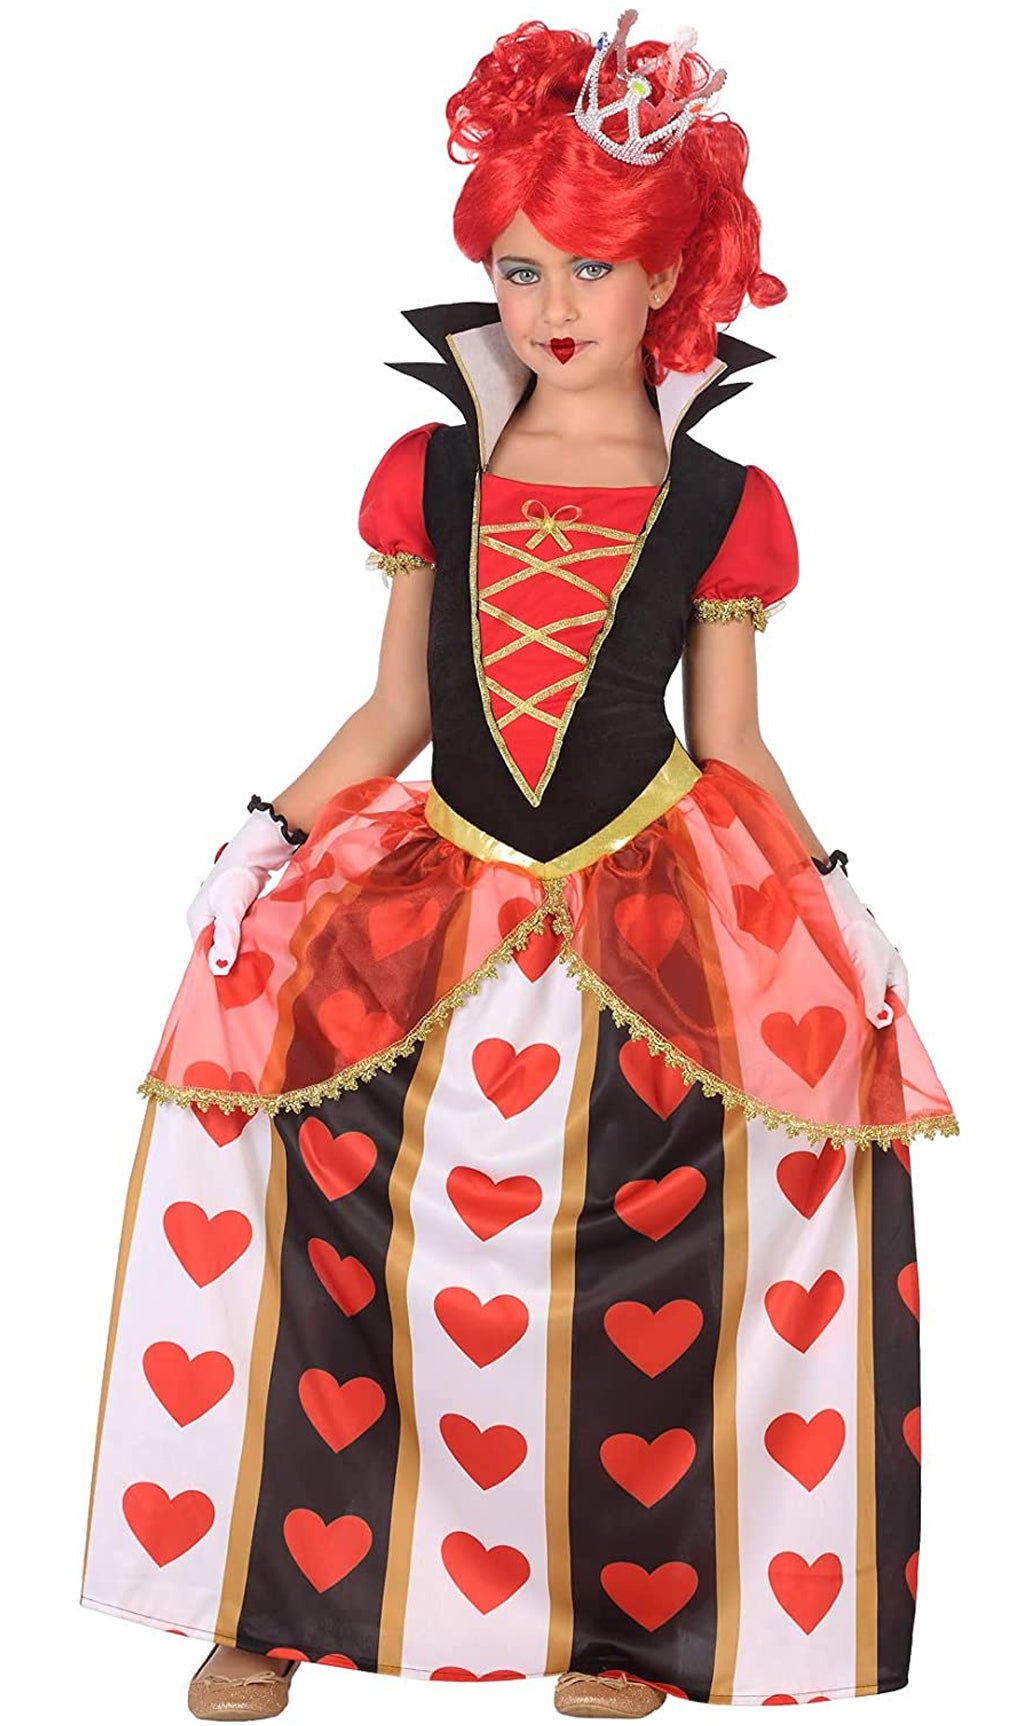 Acquista online Costume da Regina di Cuori infantile